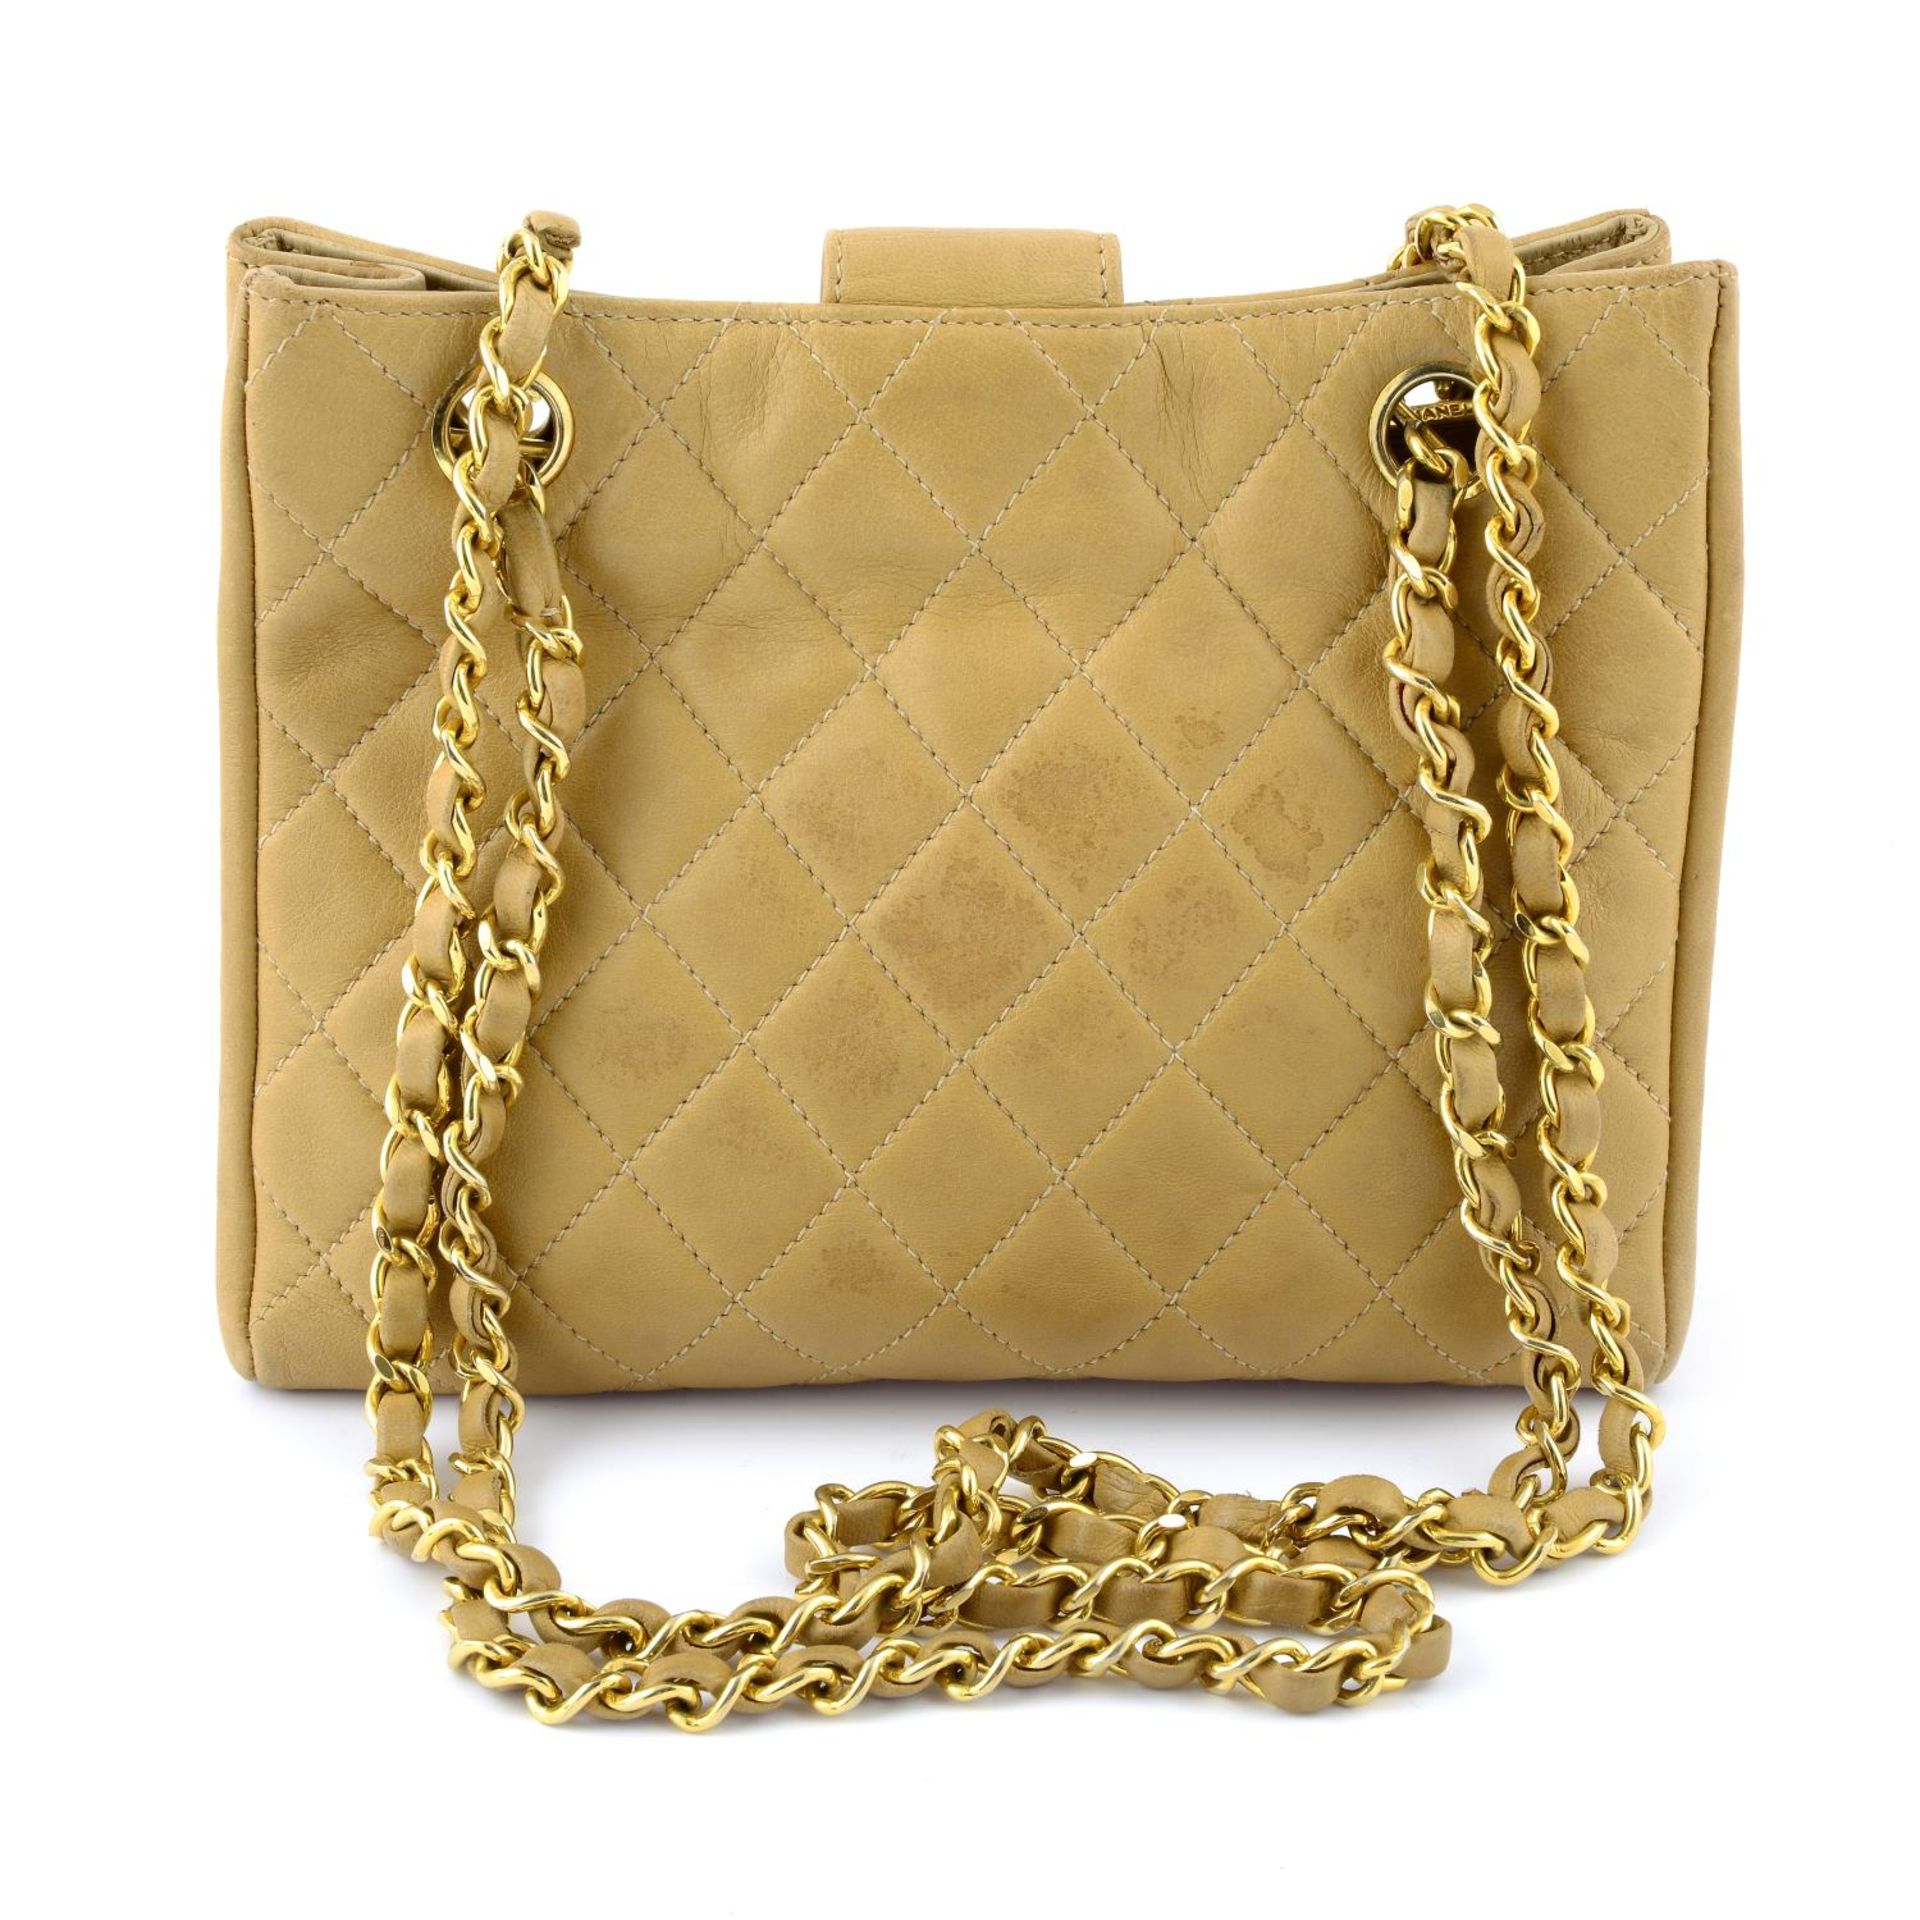 CHANEL - a vintage beige quilted handbag. - Image 2 of 5